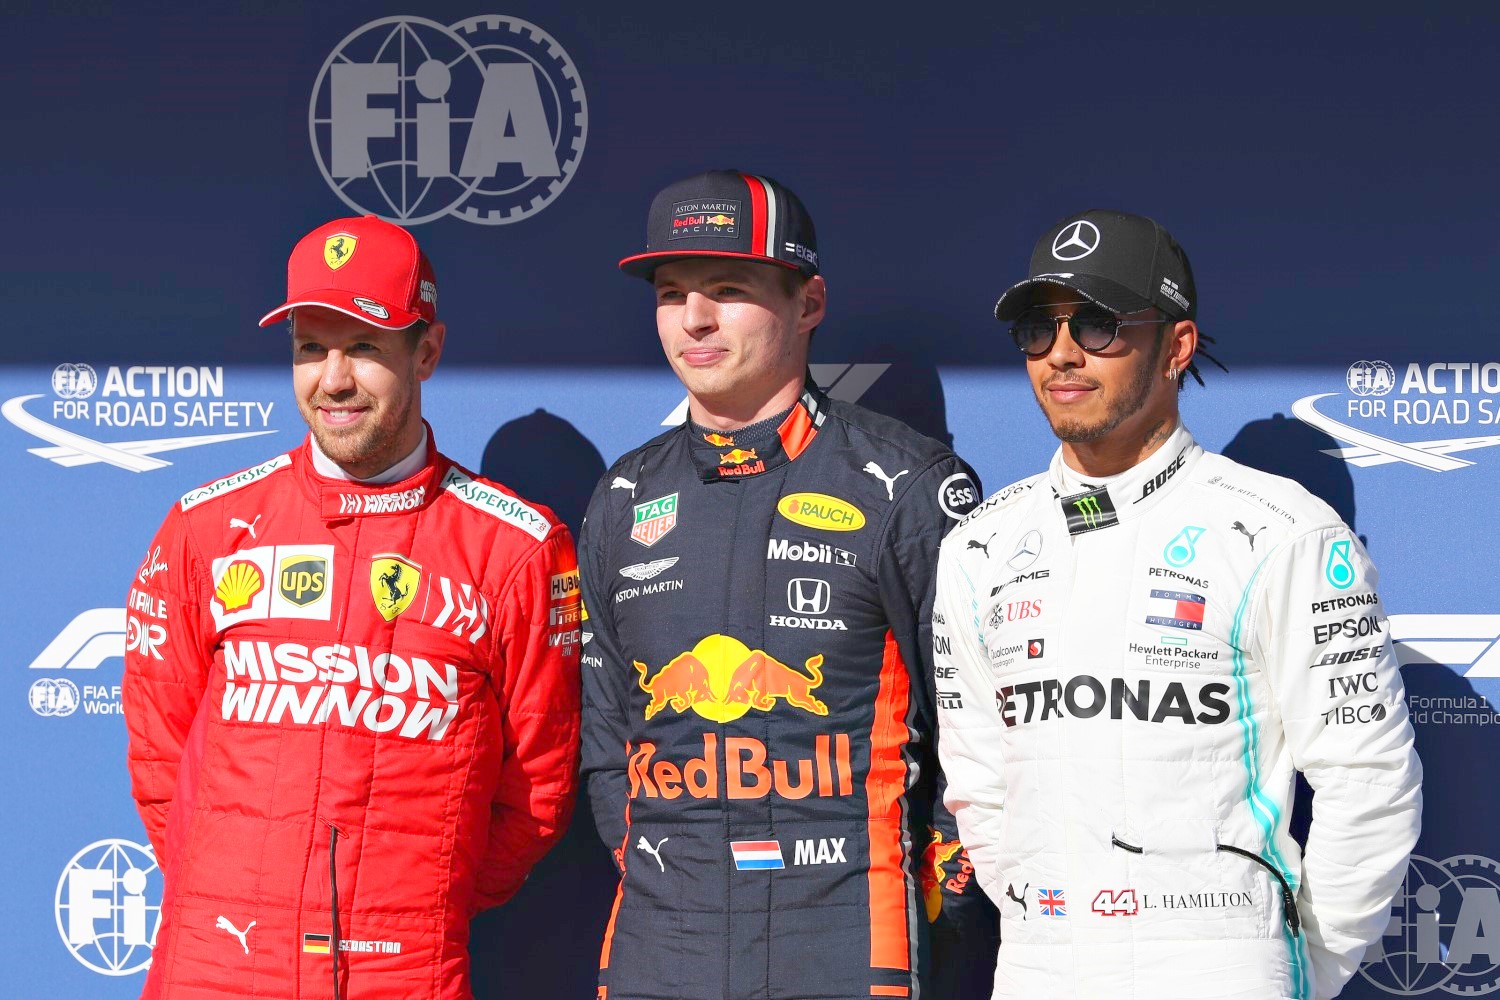 From left, Vettel, Verstappen and Hamilton